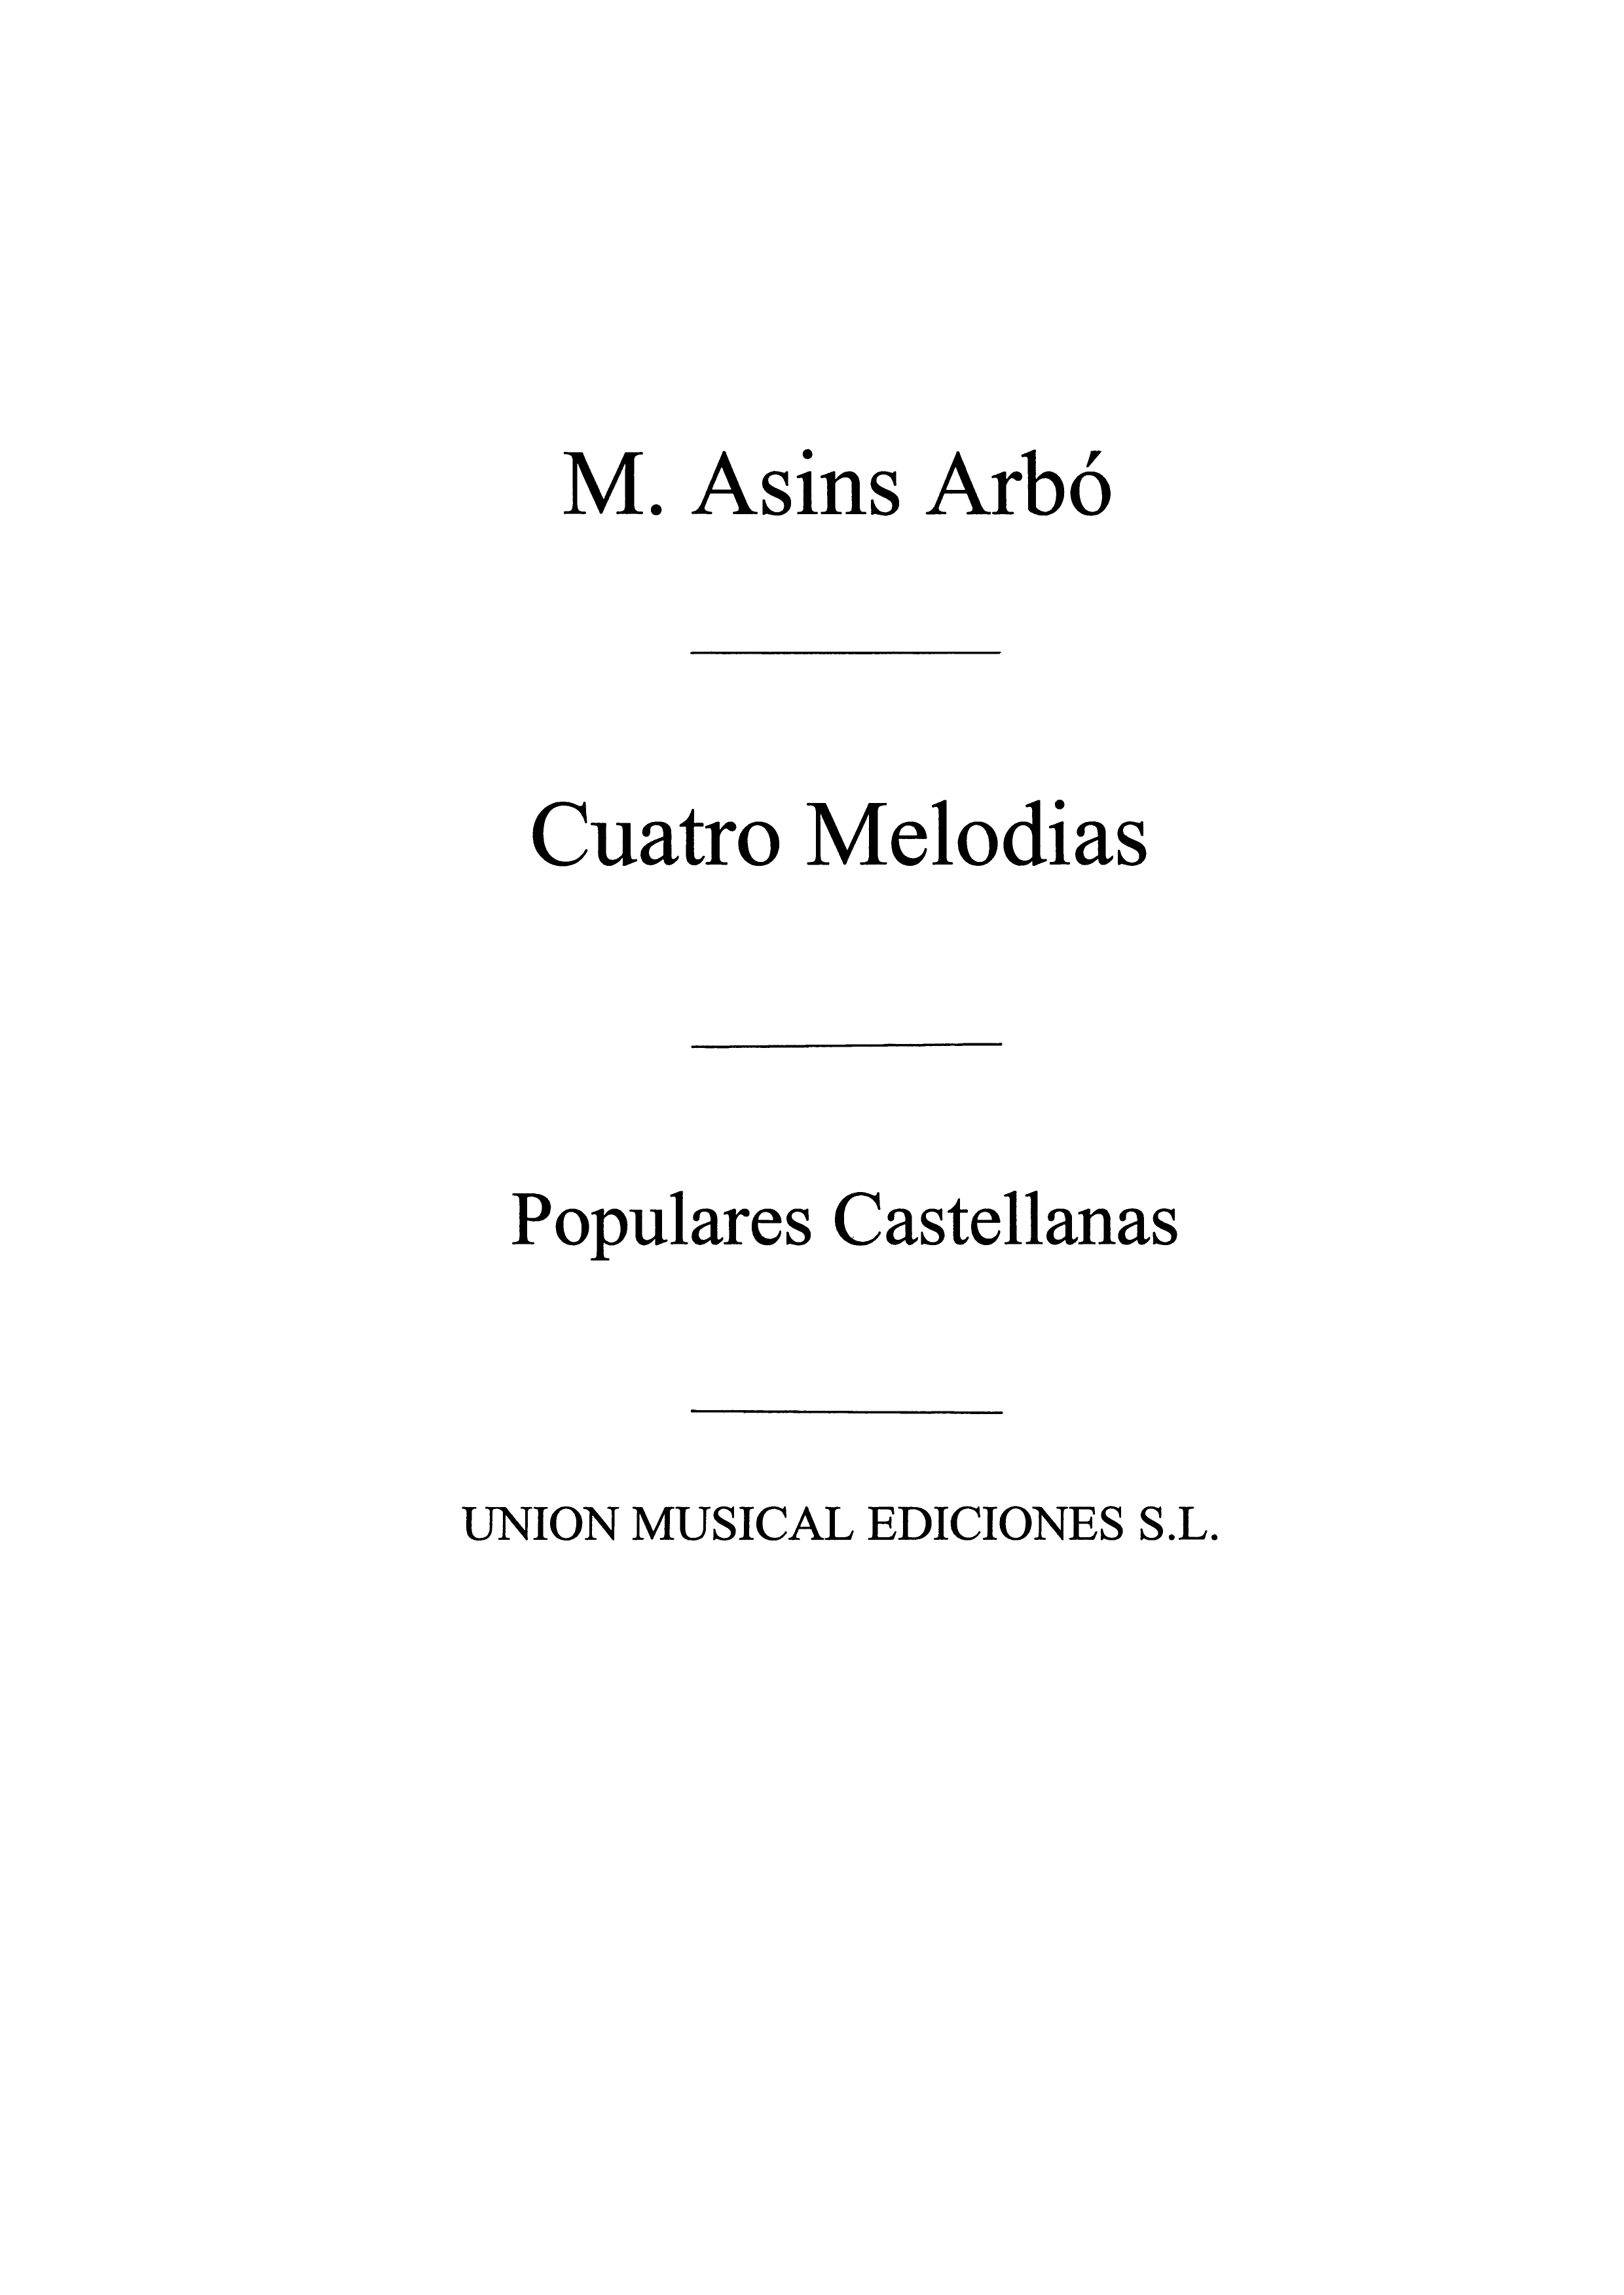 Miguel Asins Arbo: Cuatro Melodias Populares Castellanas: Piano: Instrumental